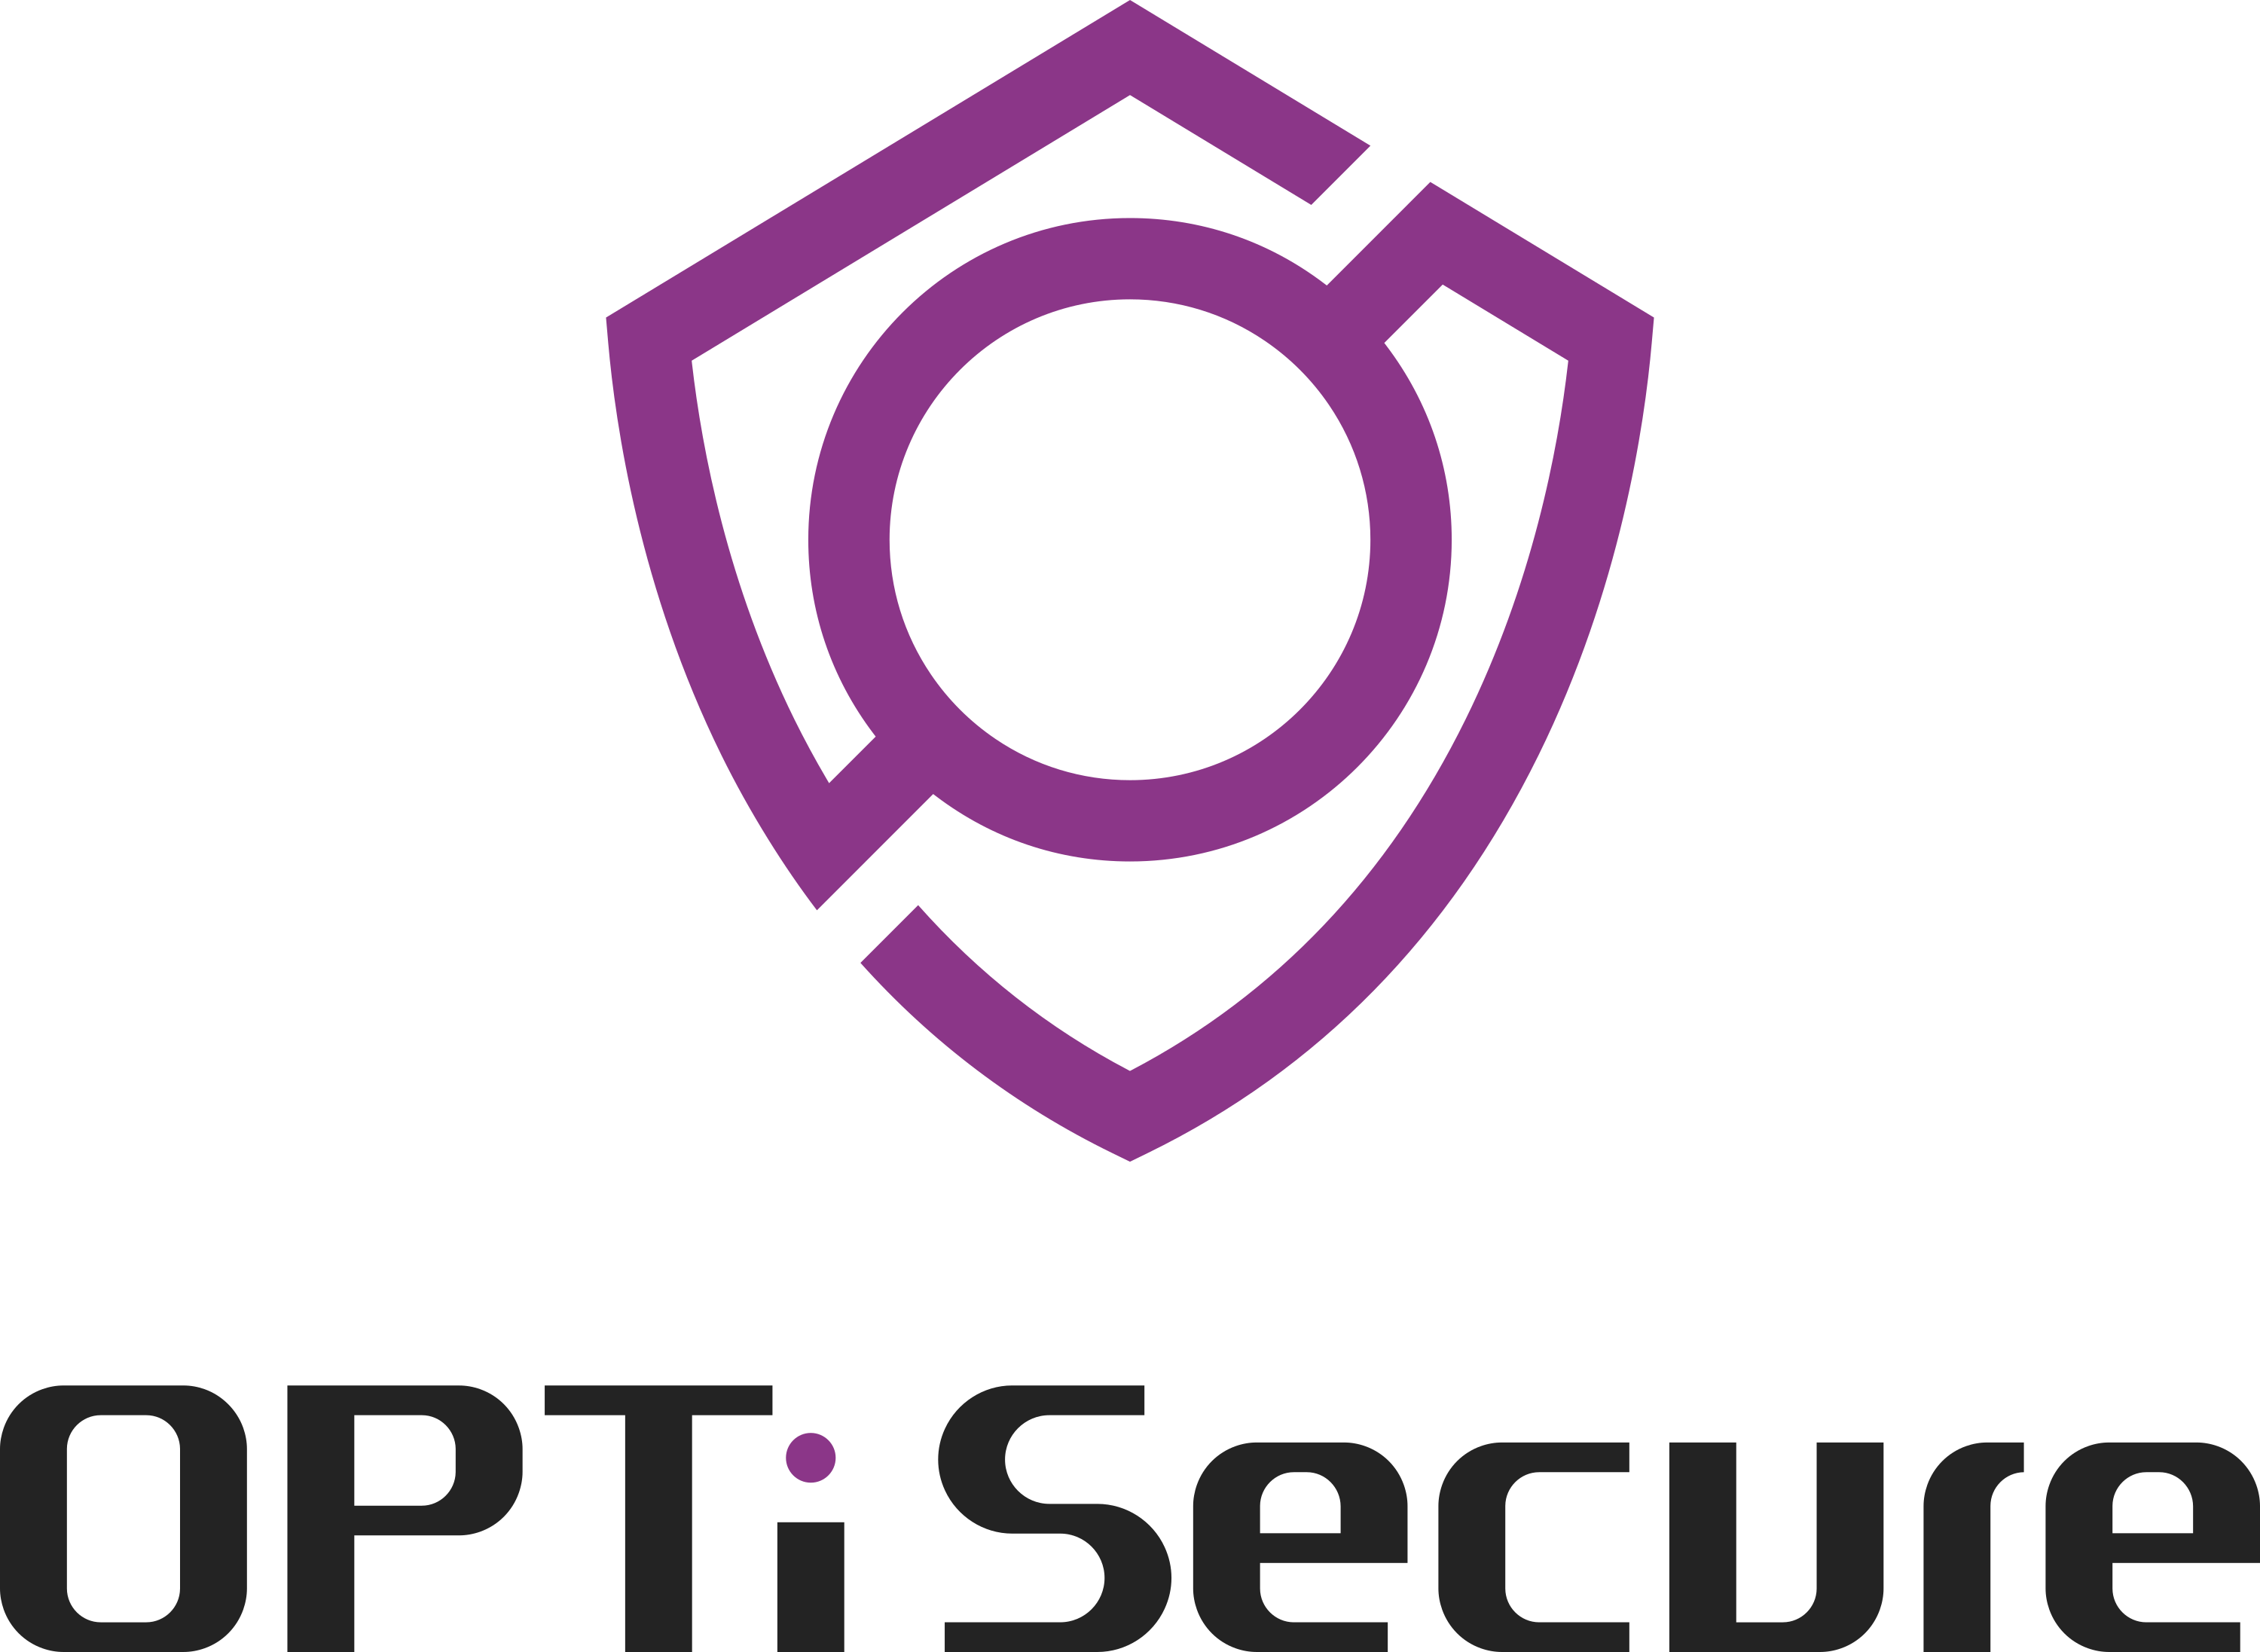 OPTi Secure（統合セキュリティ運用サービス ）について